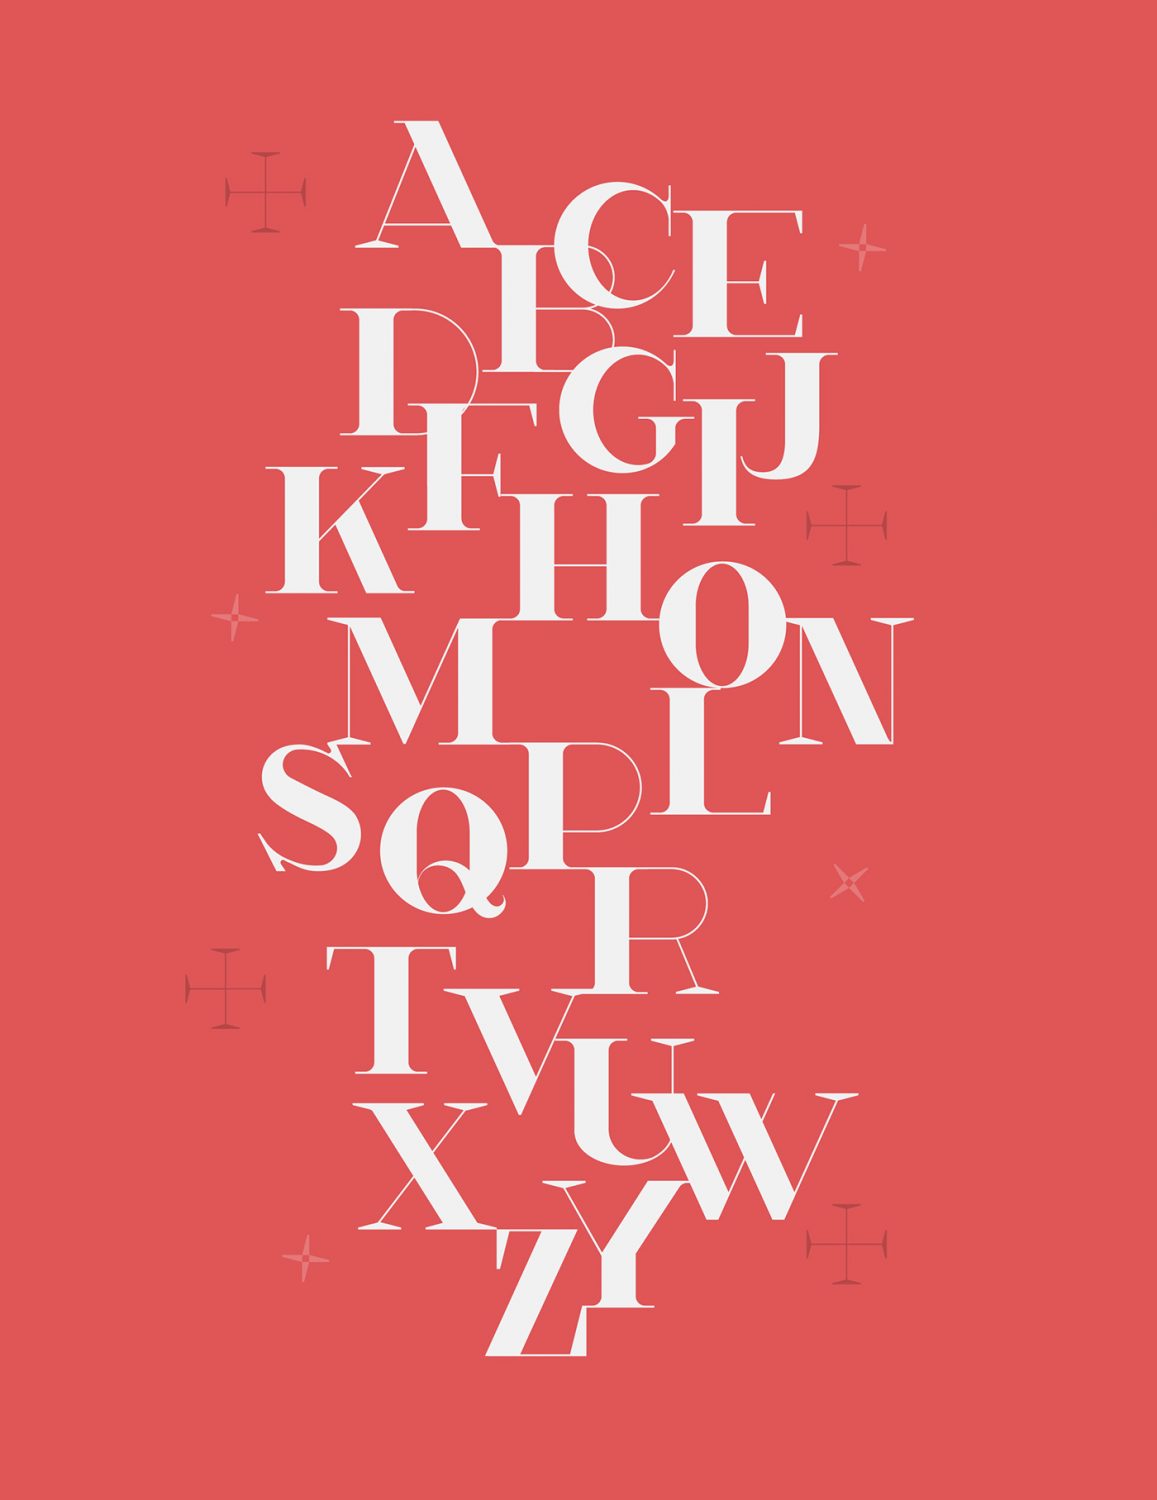 Walkon, tipografía gratuita creada para el mundo de la moda